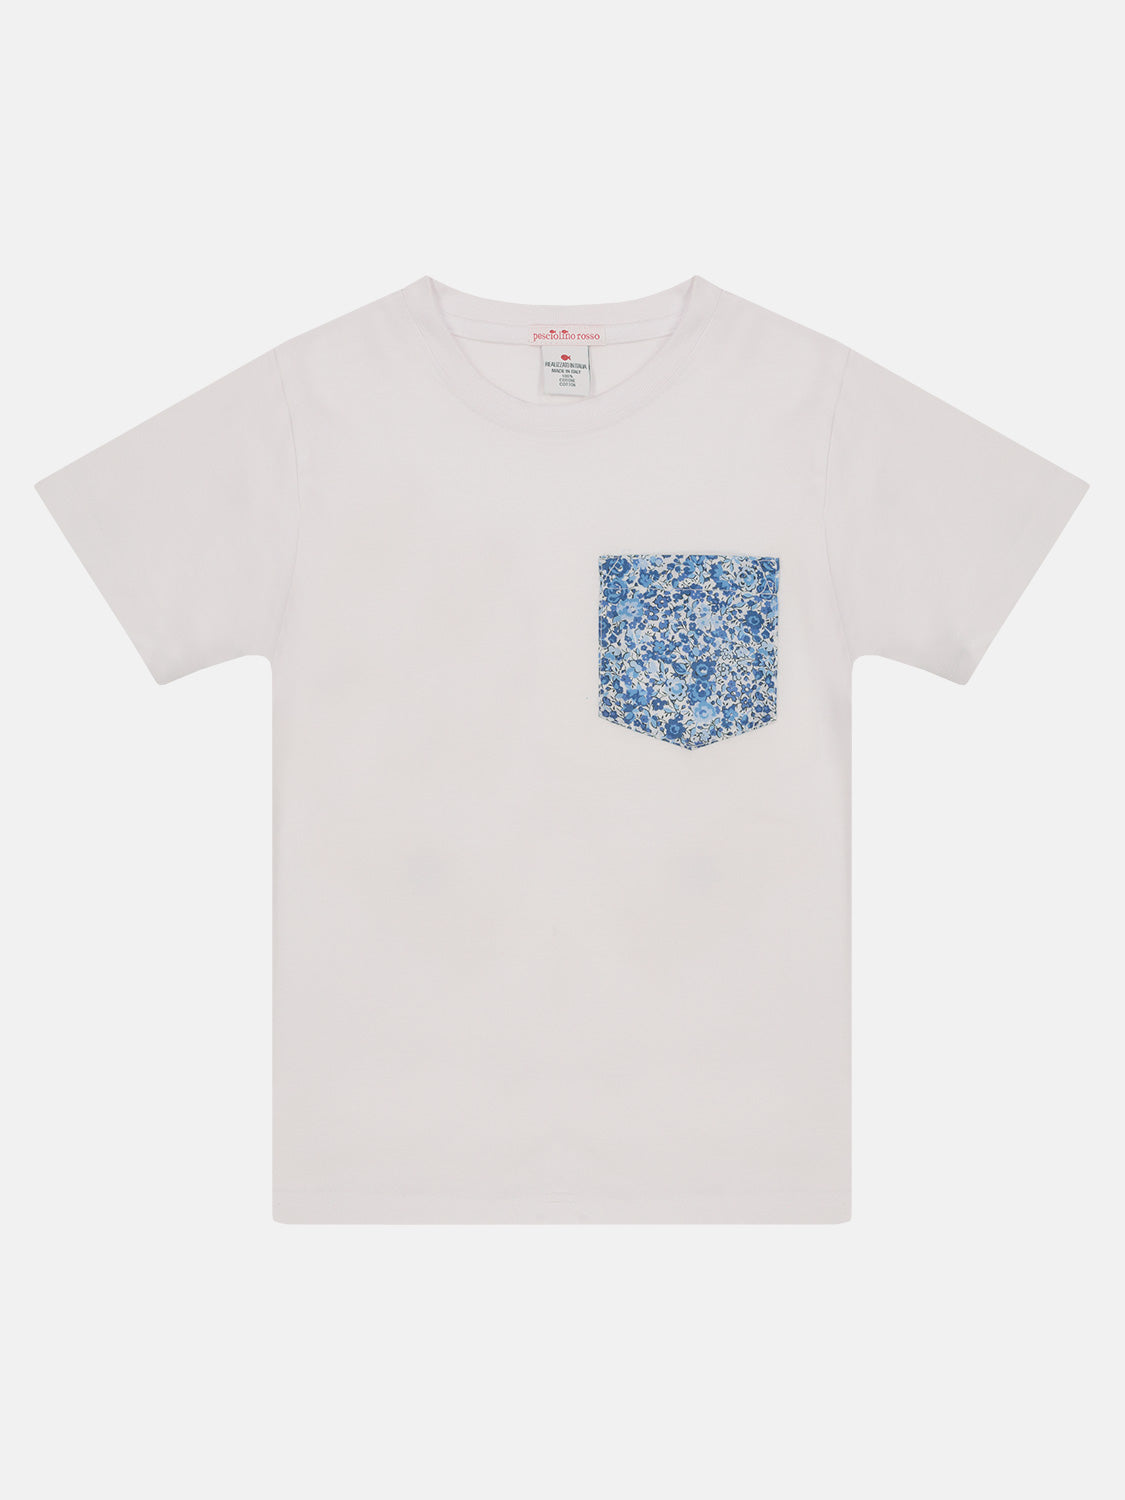 T-Shirt bambino Fiori Blu